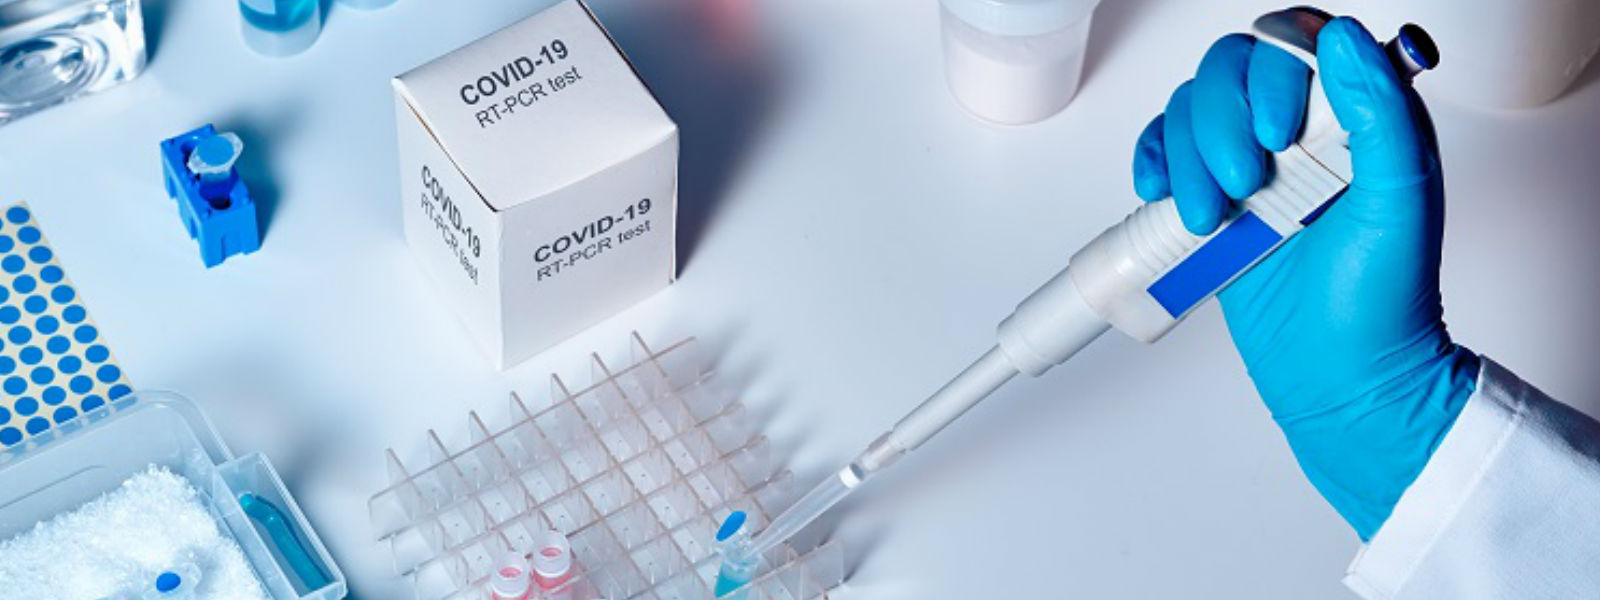 PCR மற்றும் Antigen பரிசோதனைகளுக்கு நிர்ணய விலை அறிவிக்கப்படவுள்ளது